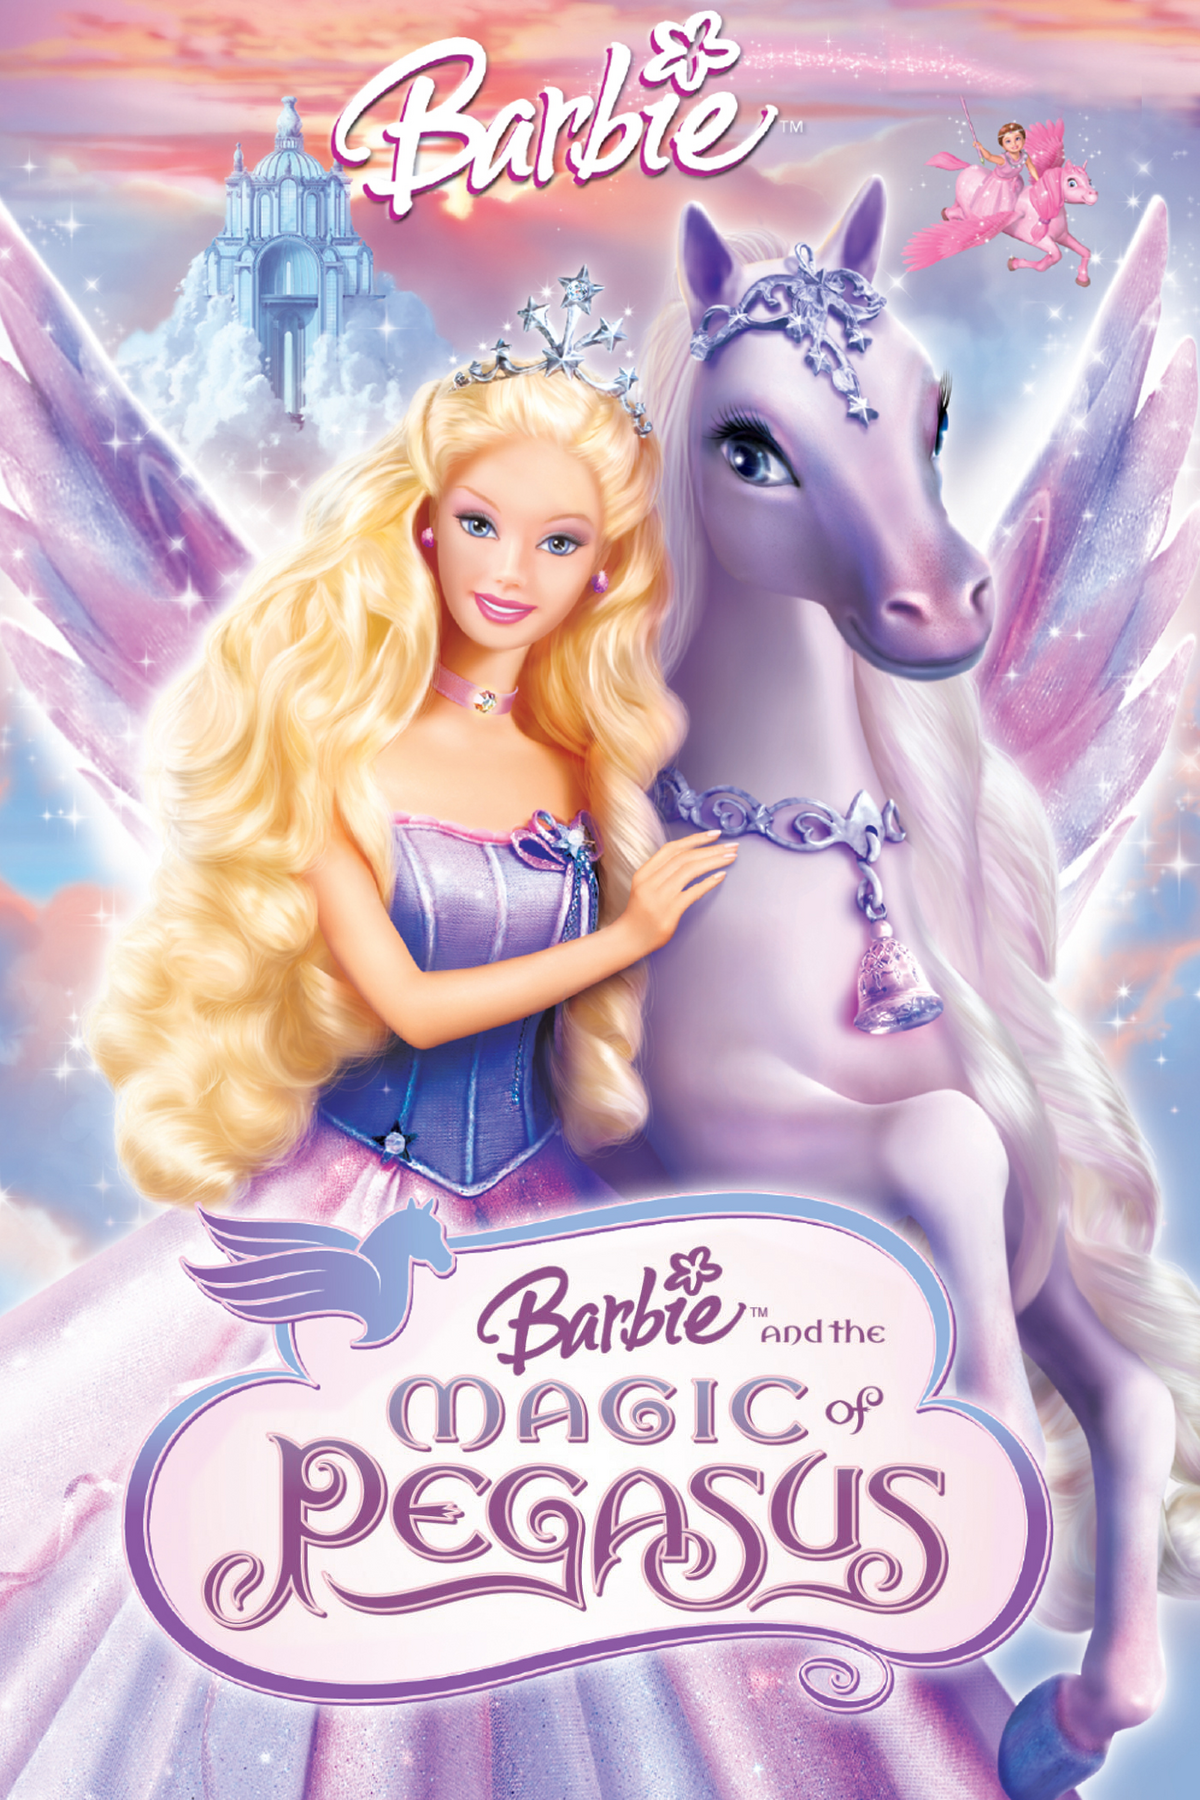 Taktil sans retort om forladelse Barbie and the Magic of Pegasus | Barbie Movies Wiki | Fandom